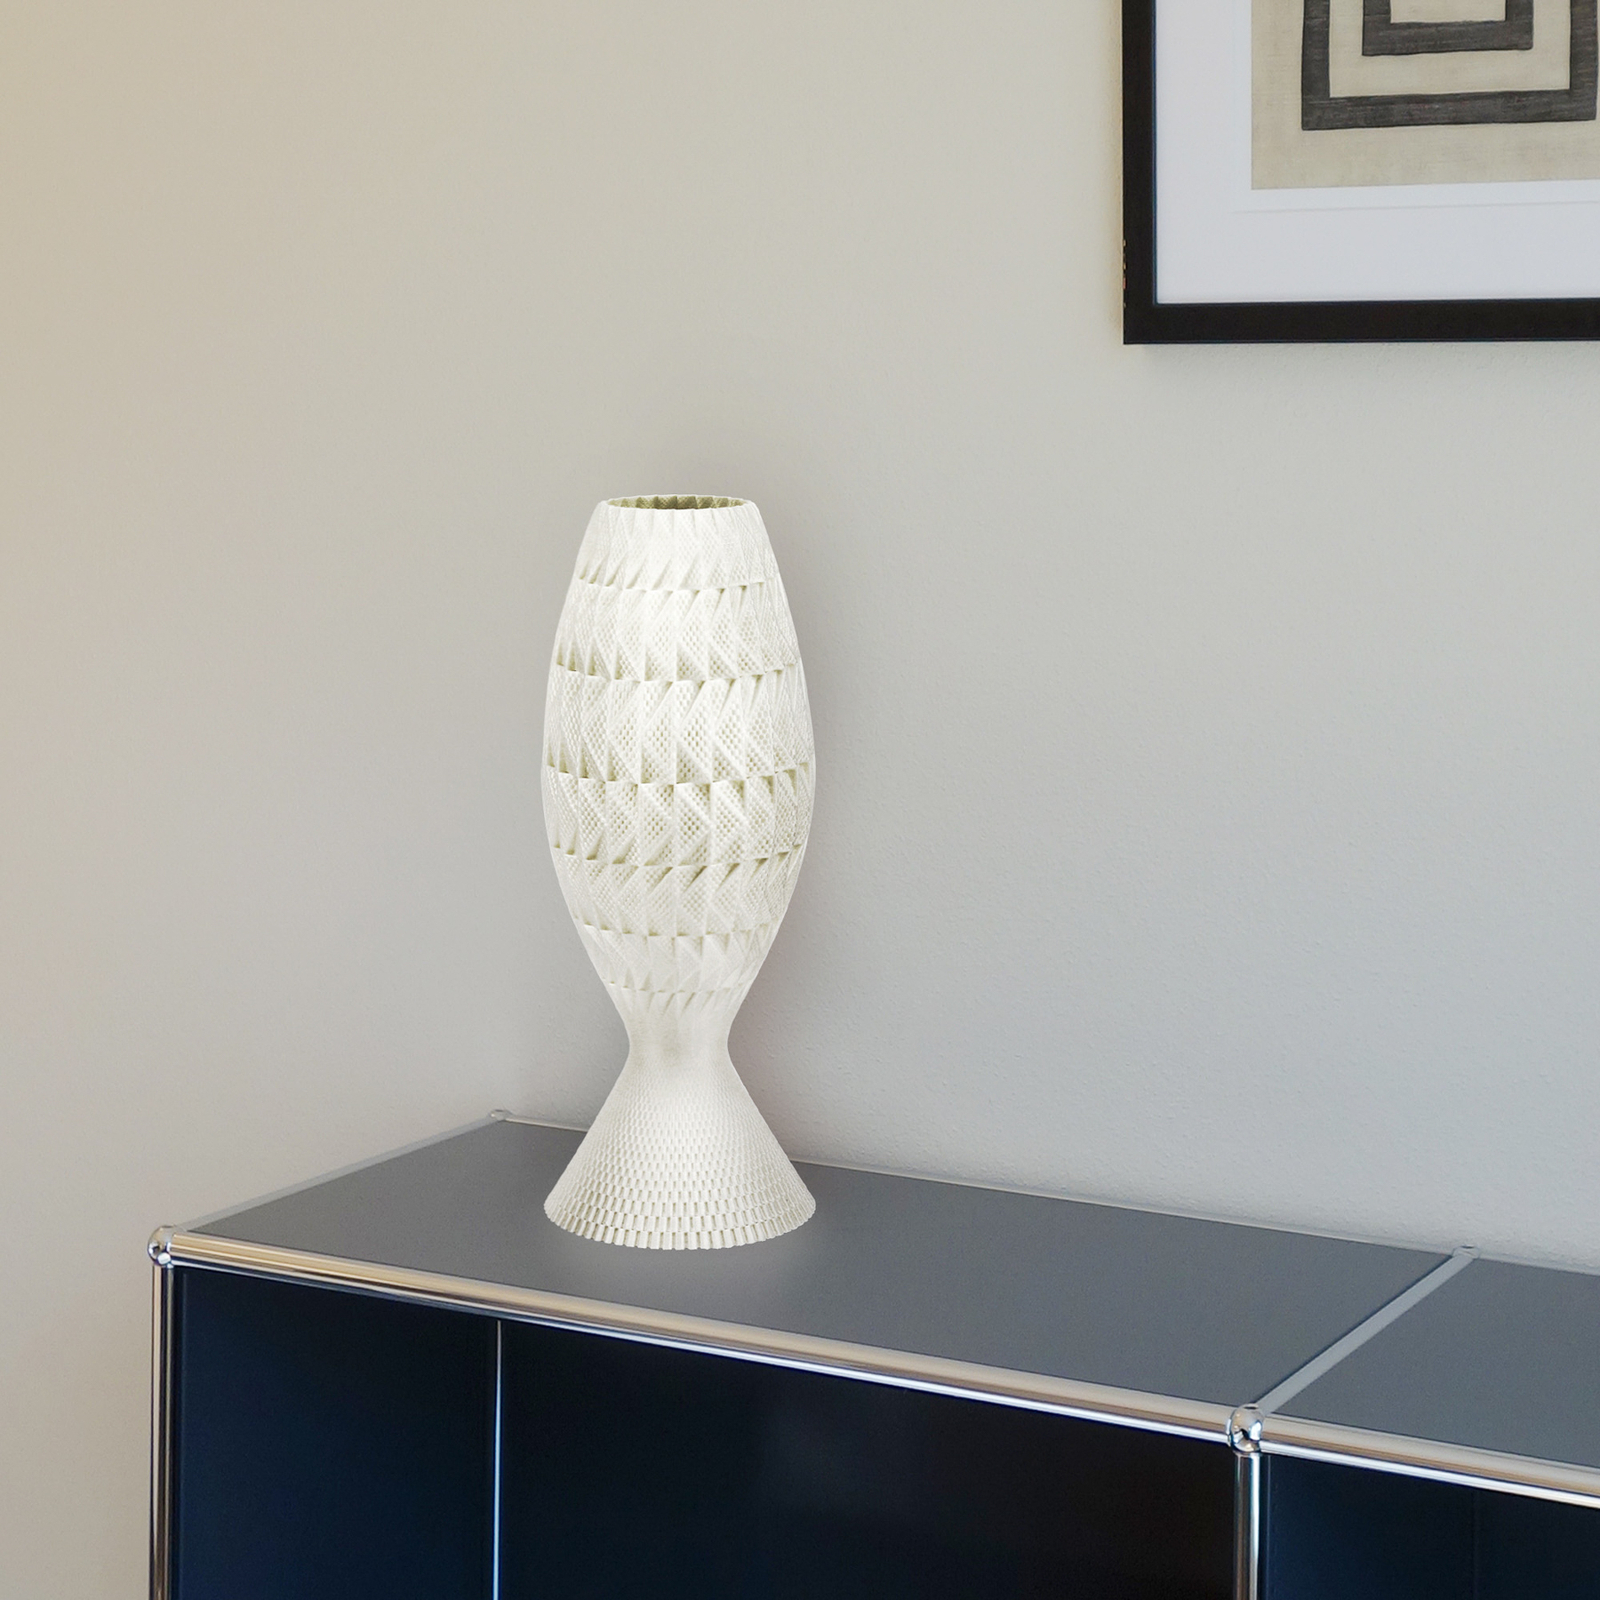 Fraktal table lamp made of biomaterial, silk, 33 cm